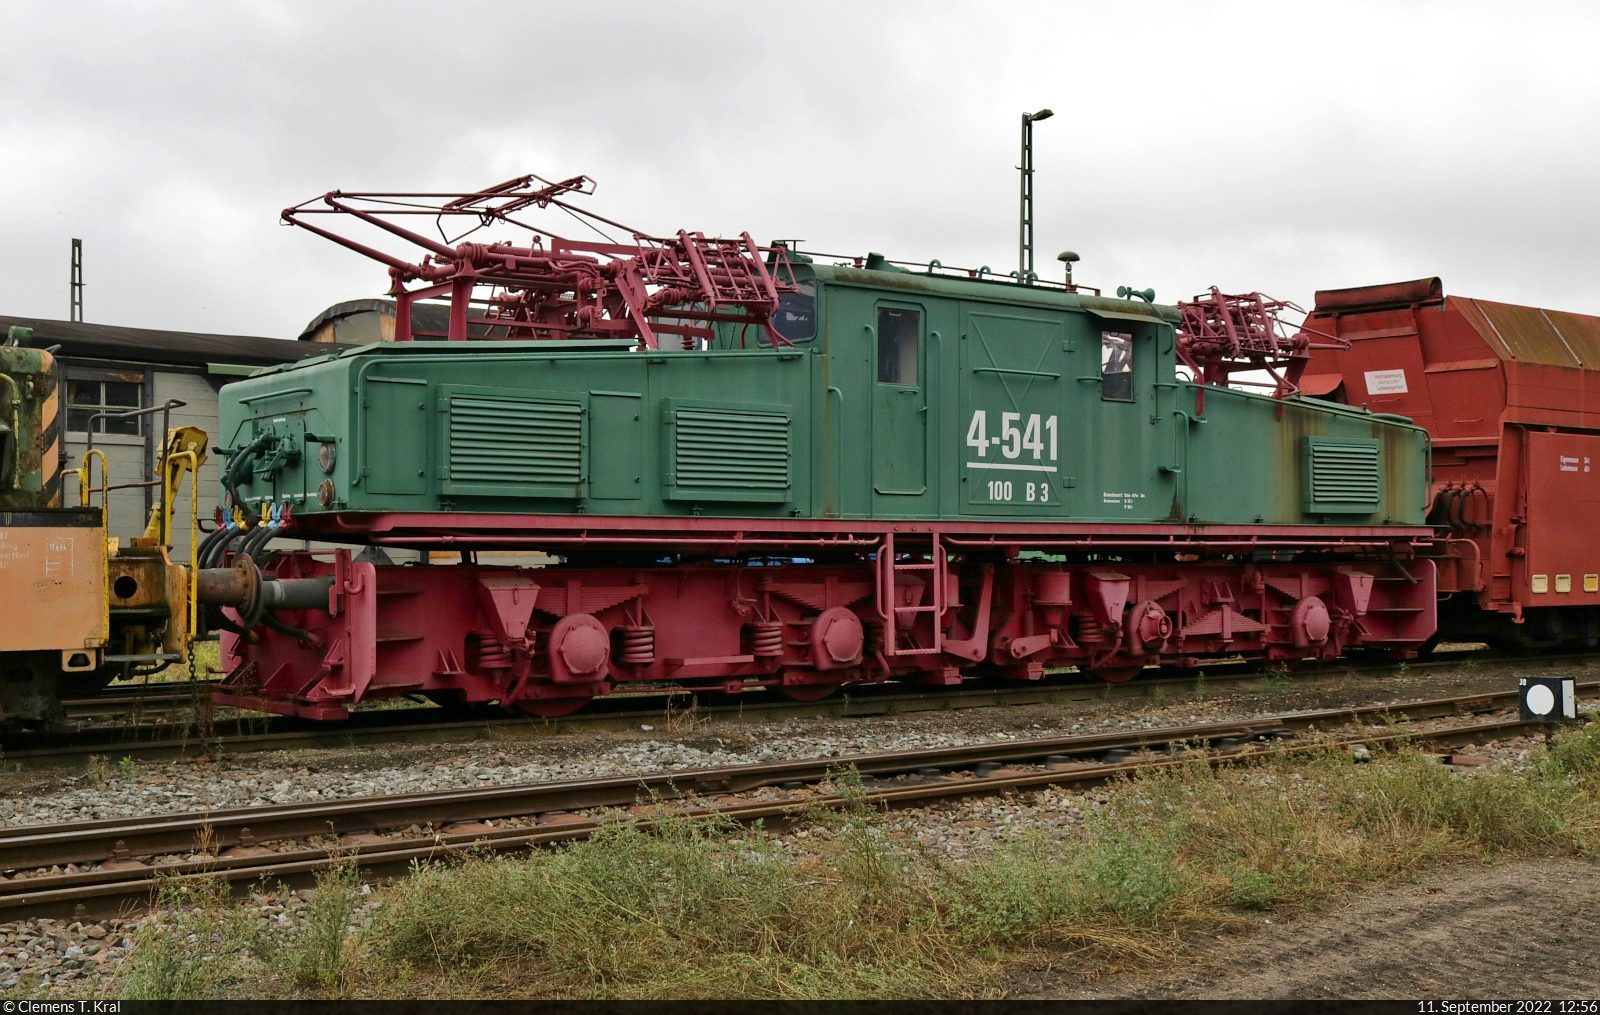 Tagebau-Lok vom Typ LEW EL 2, mit der Nummer 4-541, ist ausgestellt beim Lokschuppen Aschersleben und wurde während des 32. Verkehrshistorischen Wochenendes verewigt.

🧰 Eisenbahnclub Aschersleben e.V. (ECA)
🕓 11.9.2022 | 12:56 Uhr